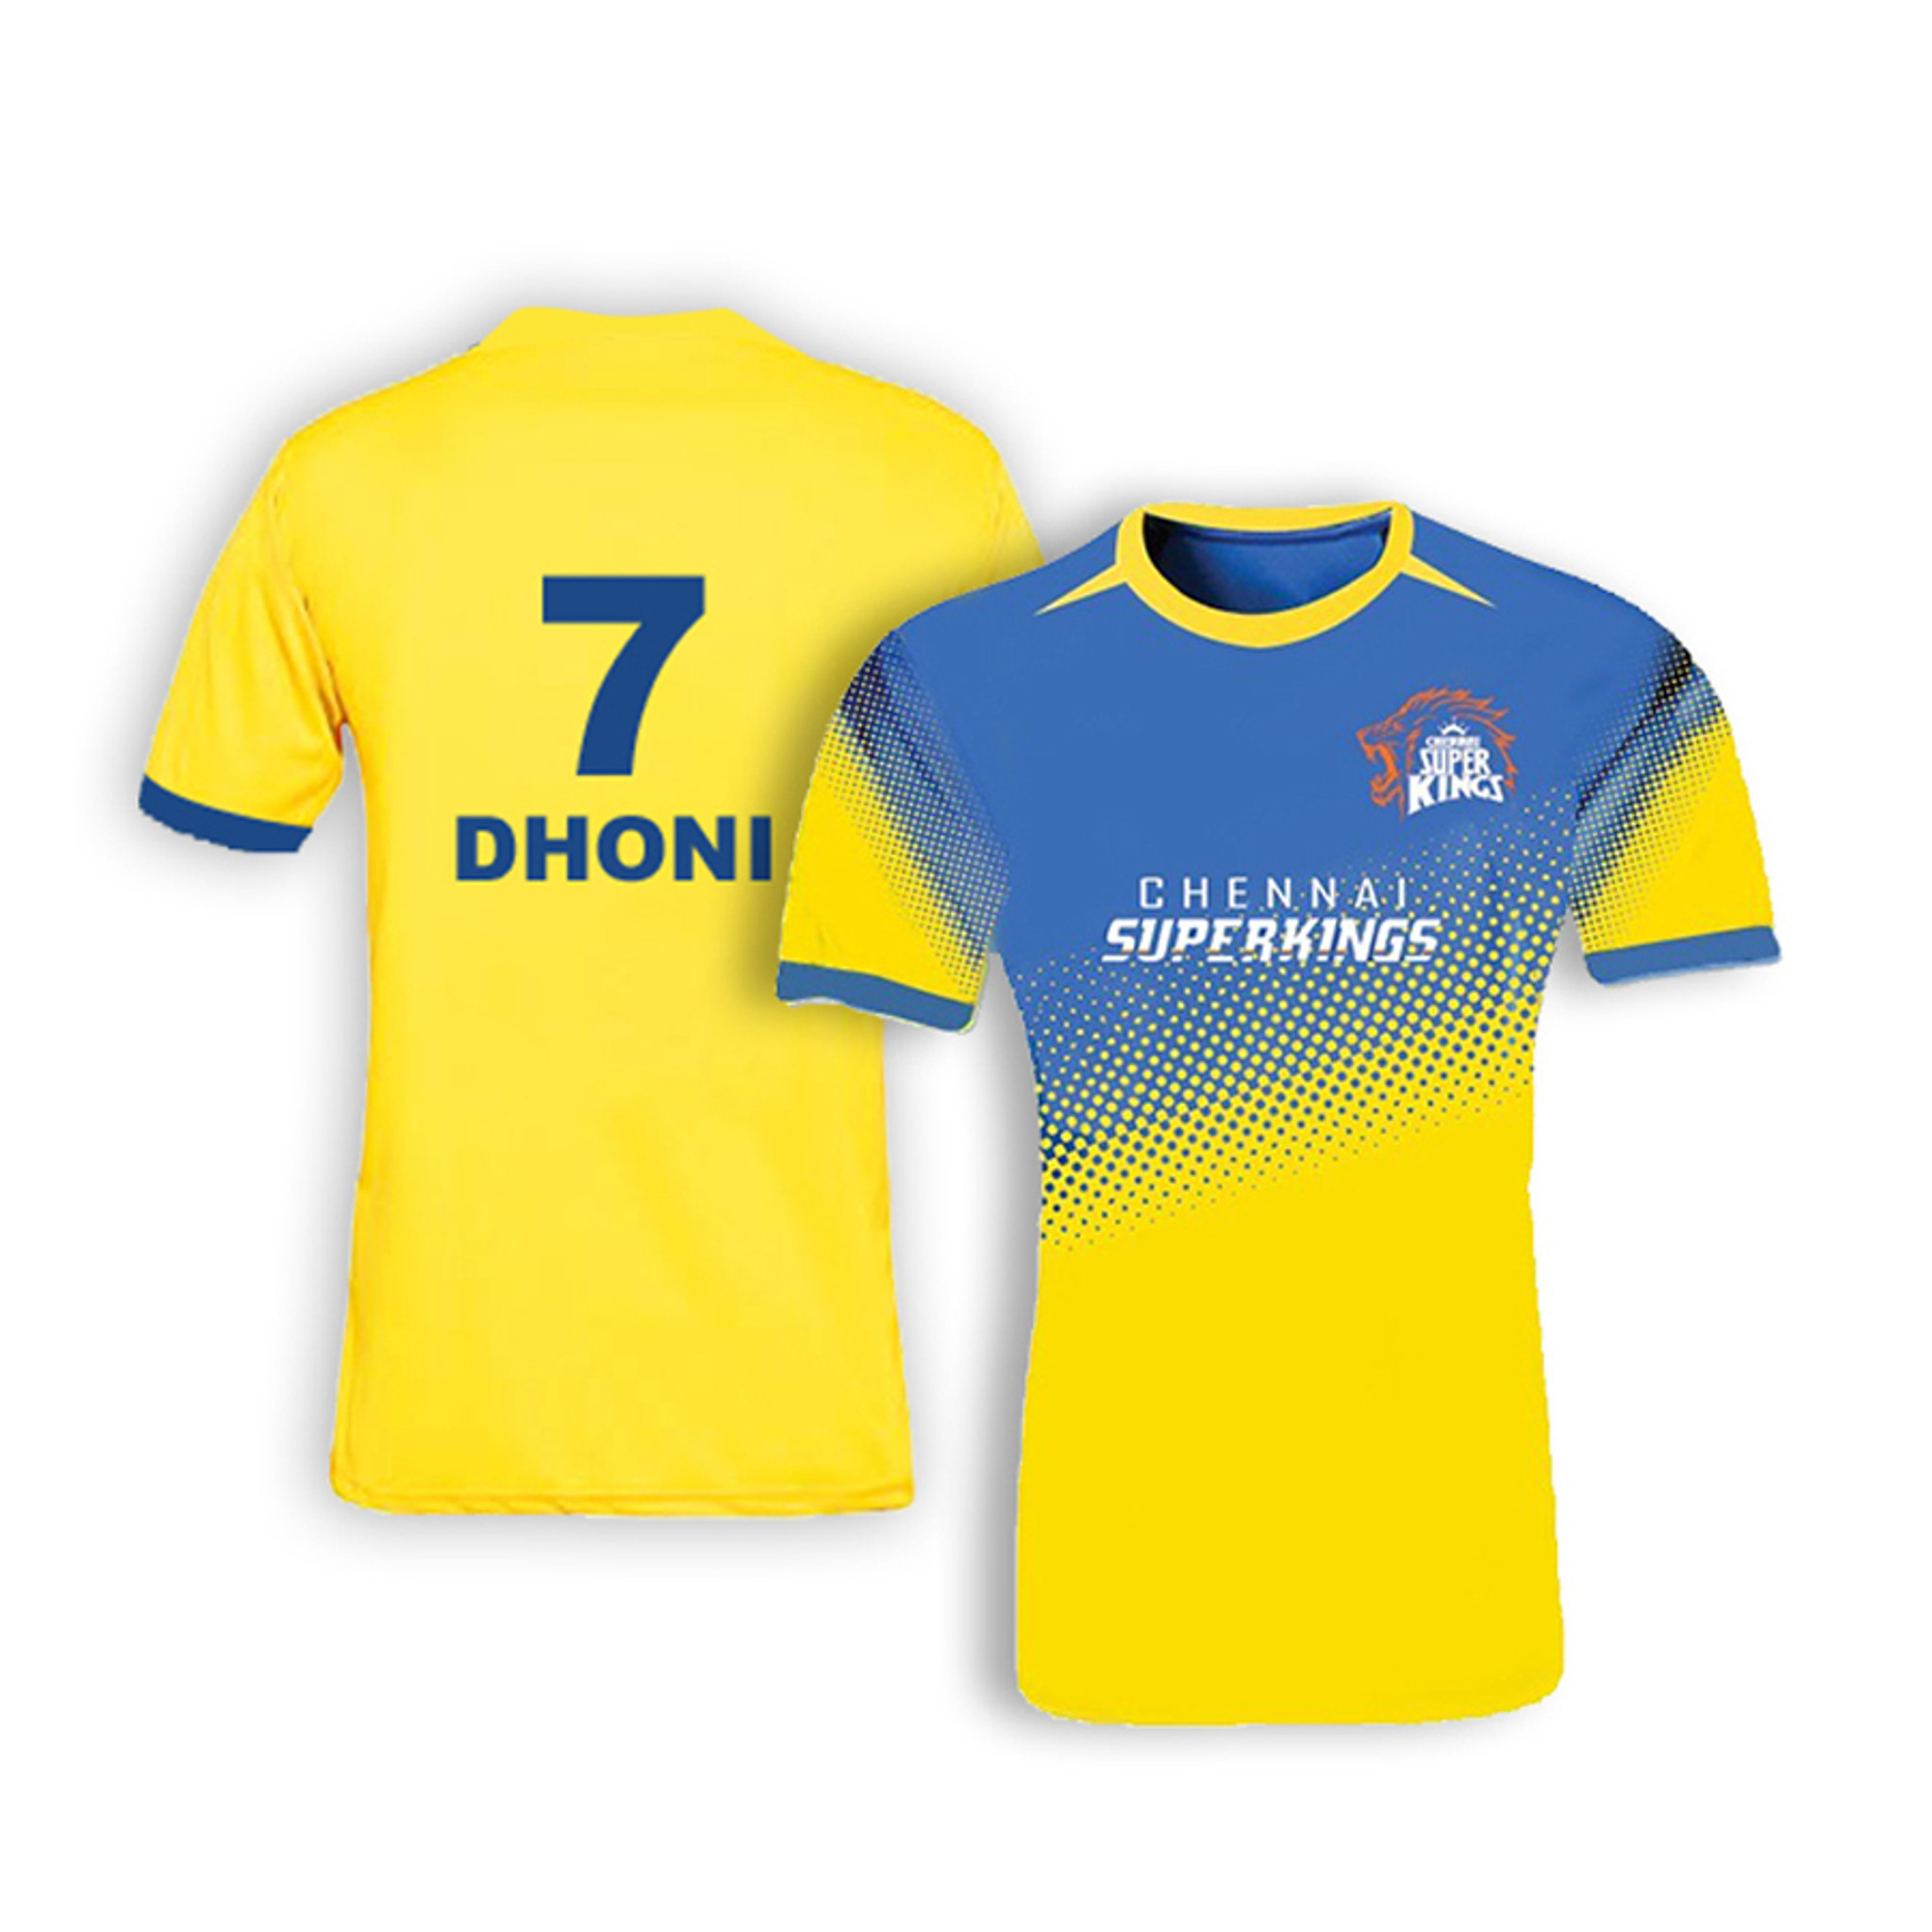 dhoni yellow jersey